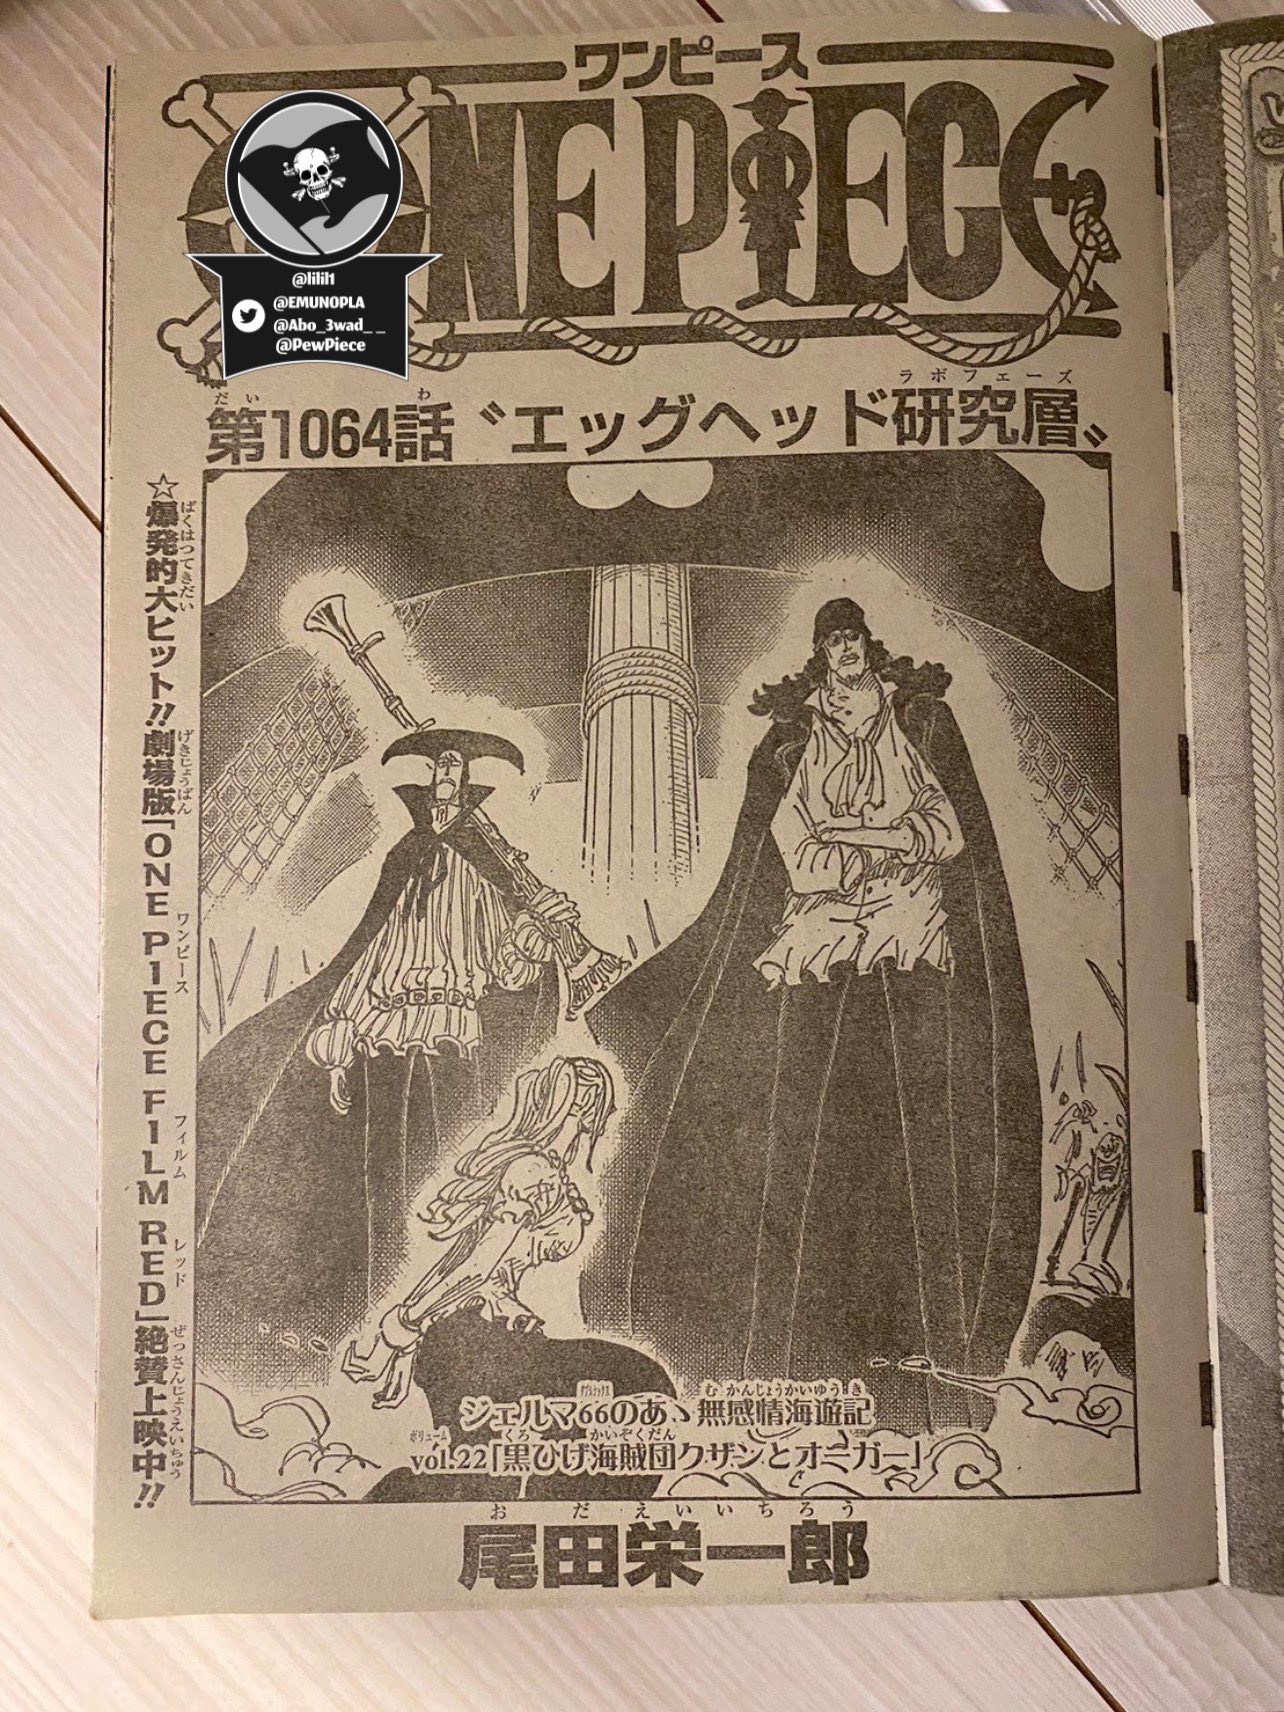 Manga One Piece 1062: Spoilers y primeras filtraciones